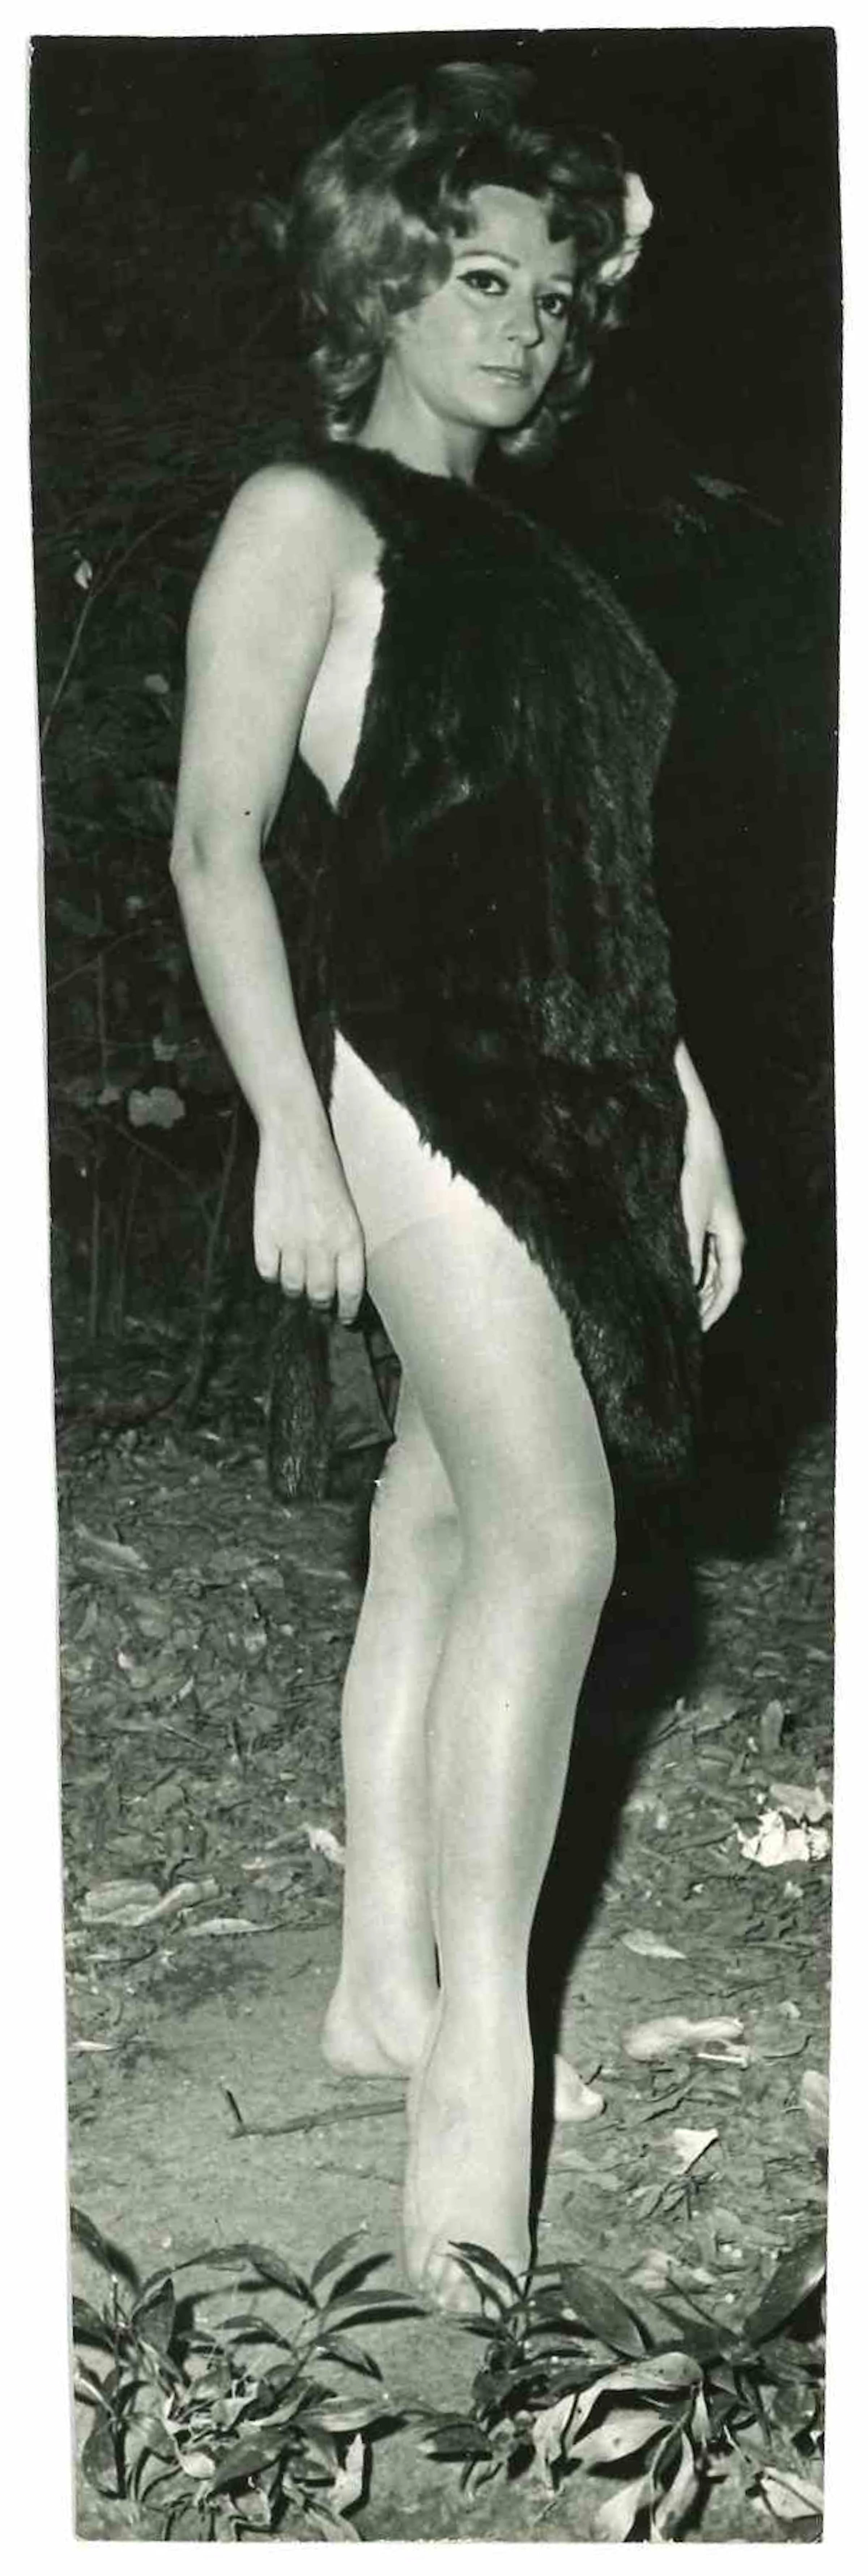 Unknown Portrait Photograph - Portrait of Miranda Martino - Golden Age of Italian Cinema - Mid 20th Century